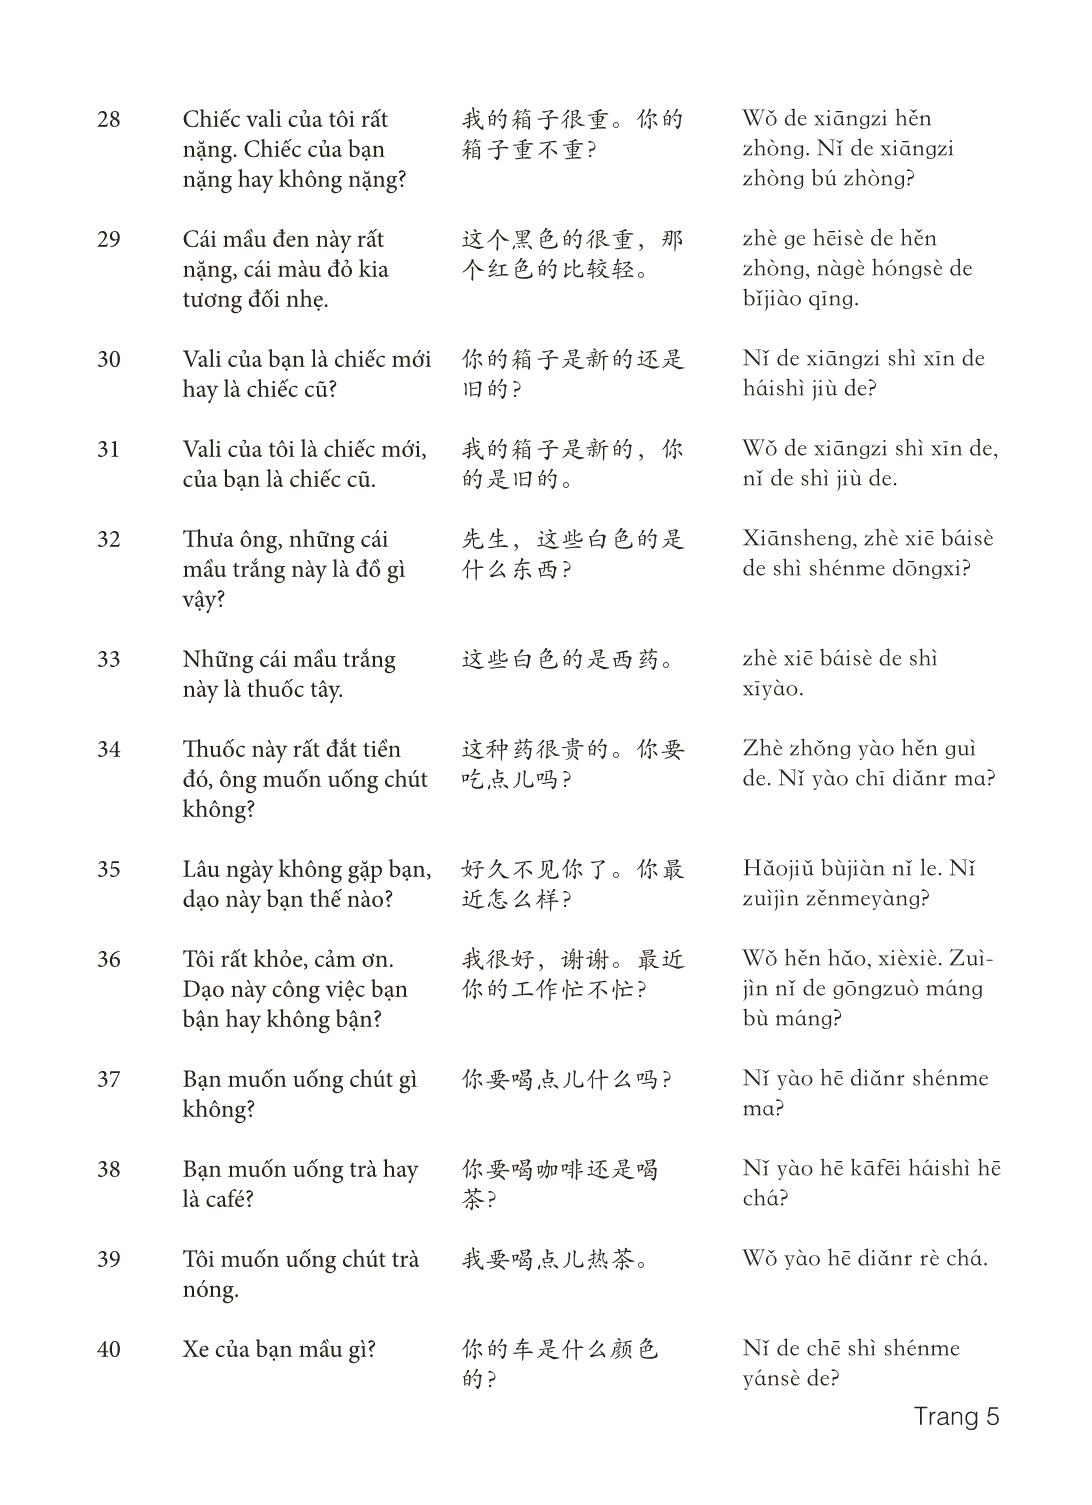 3000 Câu đàm thoại tiếng Hoa - Phần 3 trang 5